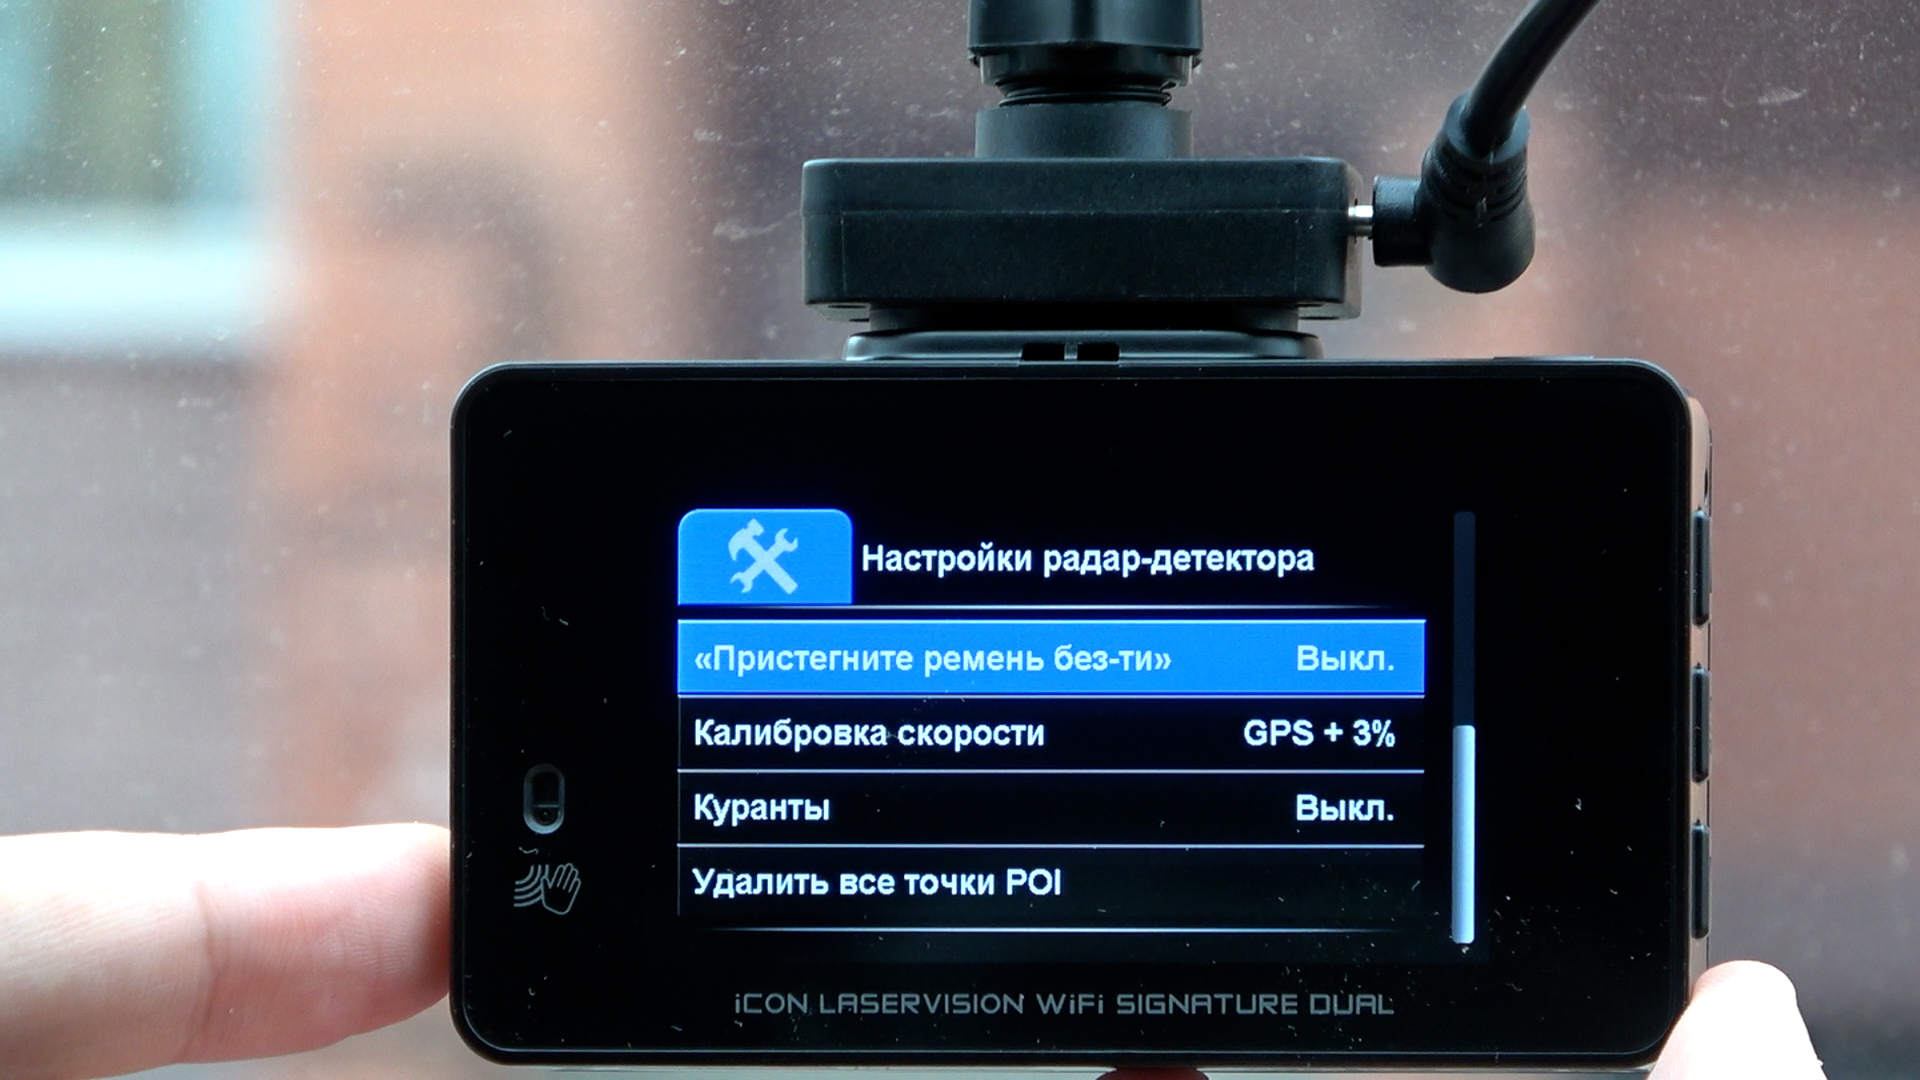 Видеорегистратор ibox icon. IBOX icon WIFI Signature. Видеорегистратор Blackview r7 Dual GPS. IBOX icon Laser Vision WIFI Signature Dual. IBOX x8 GPS.